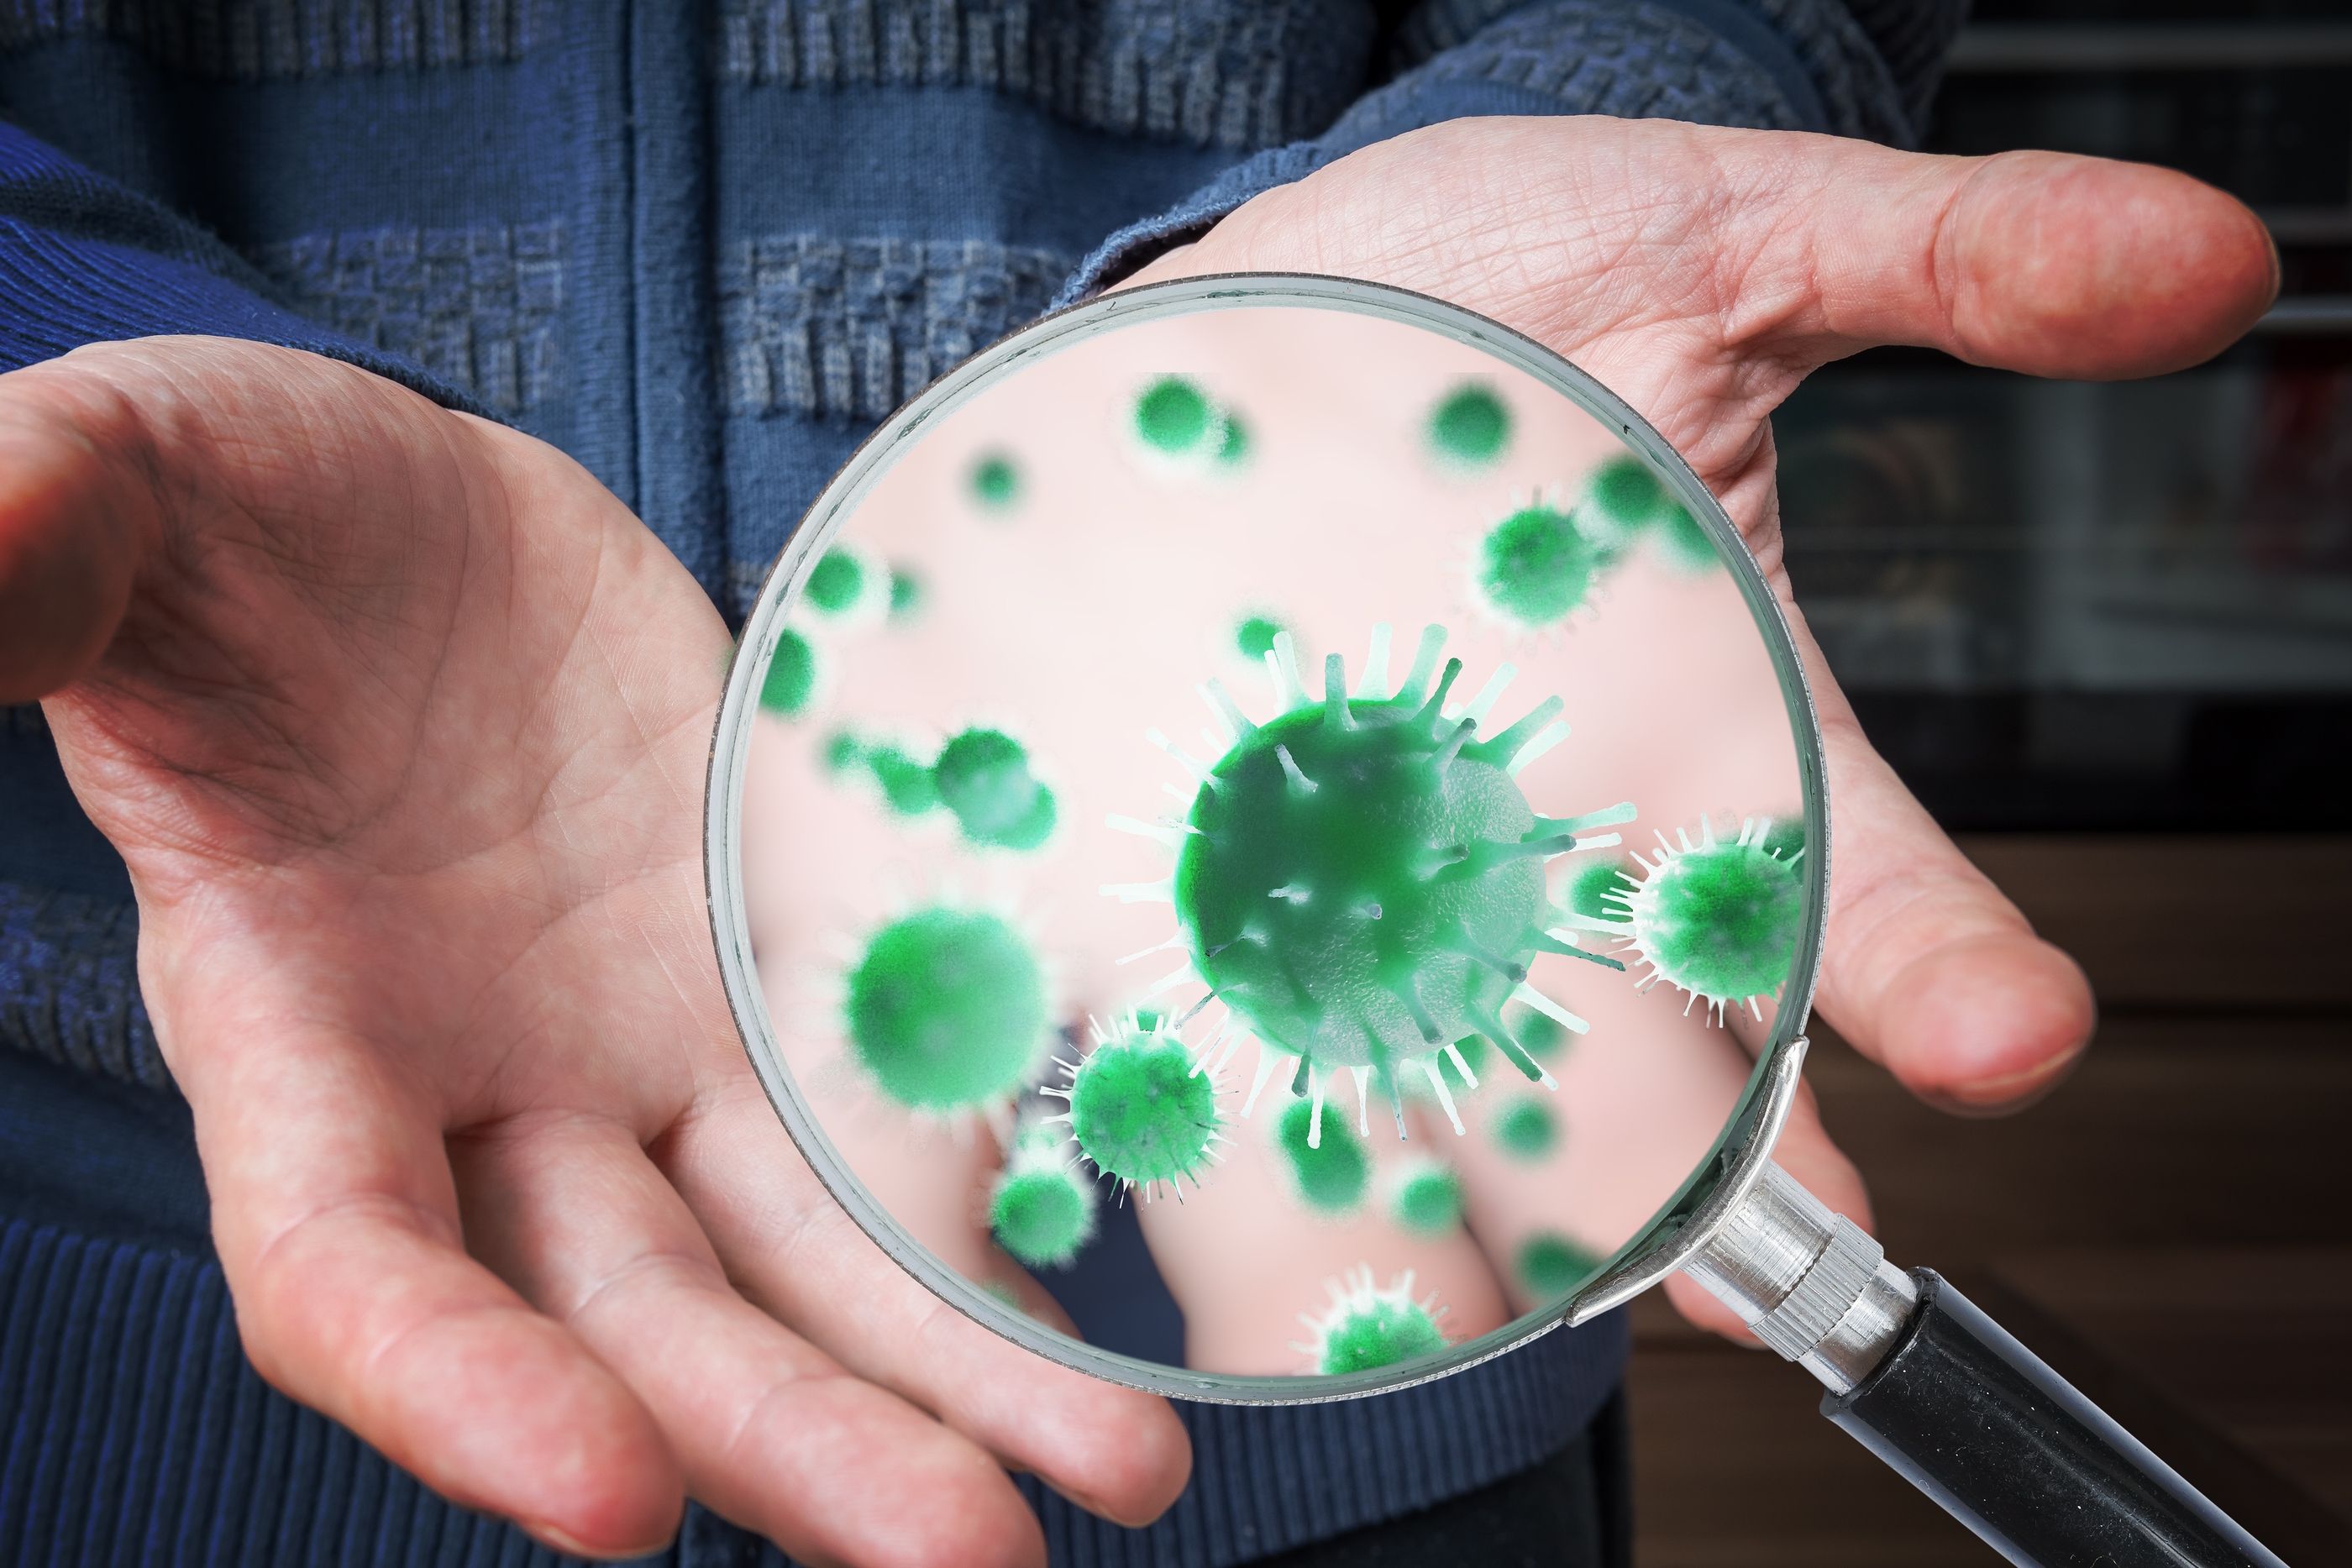 En una mano viven 150 especies distintas de bacterias